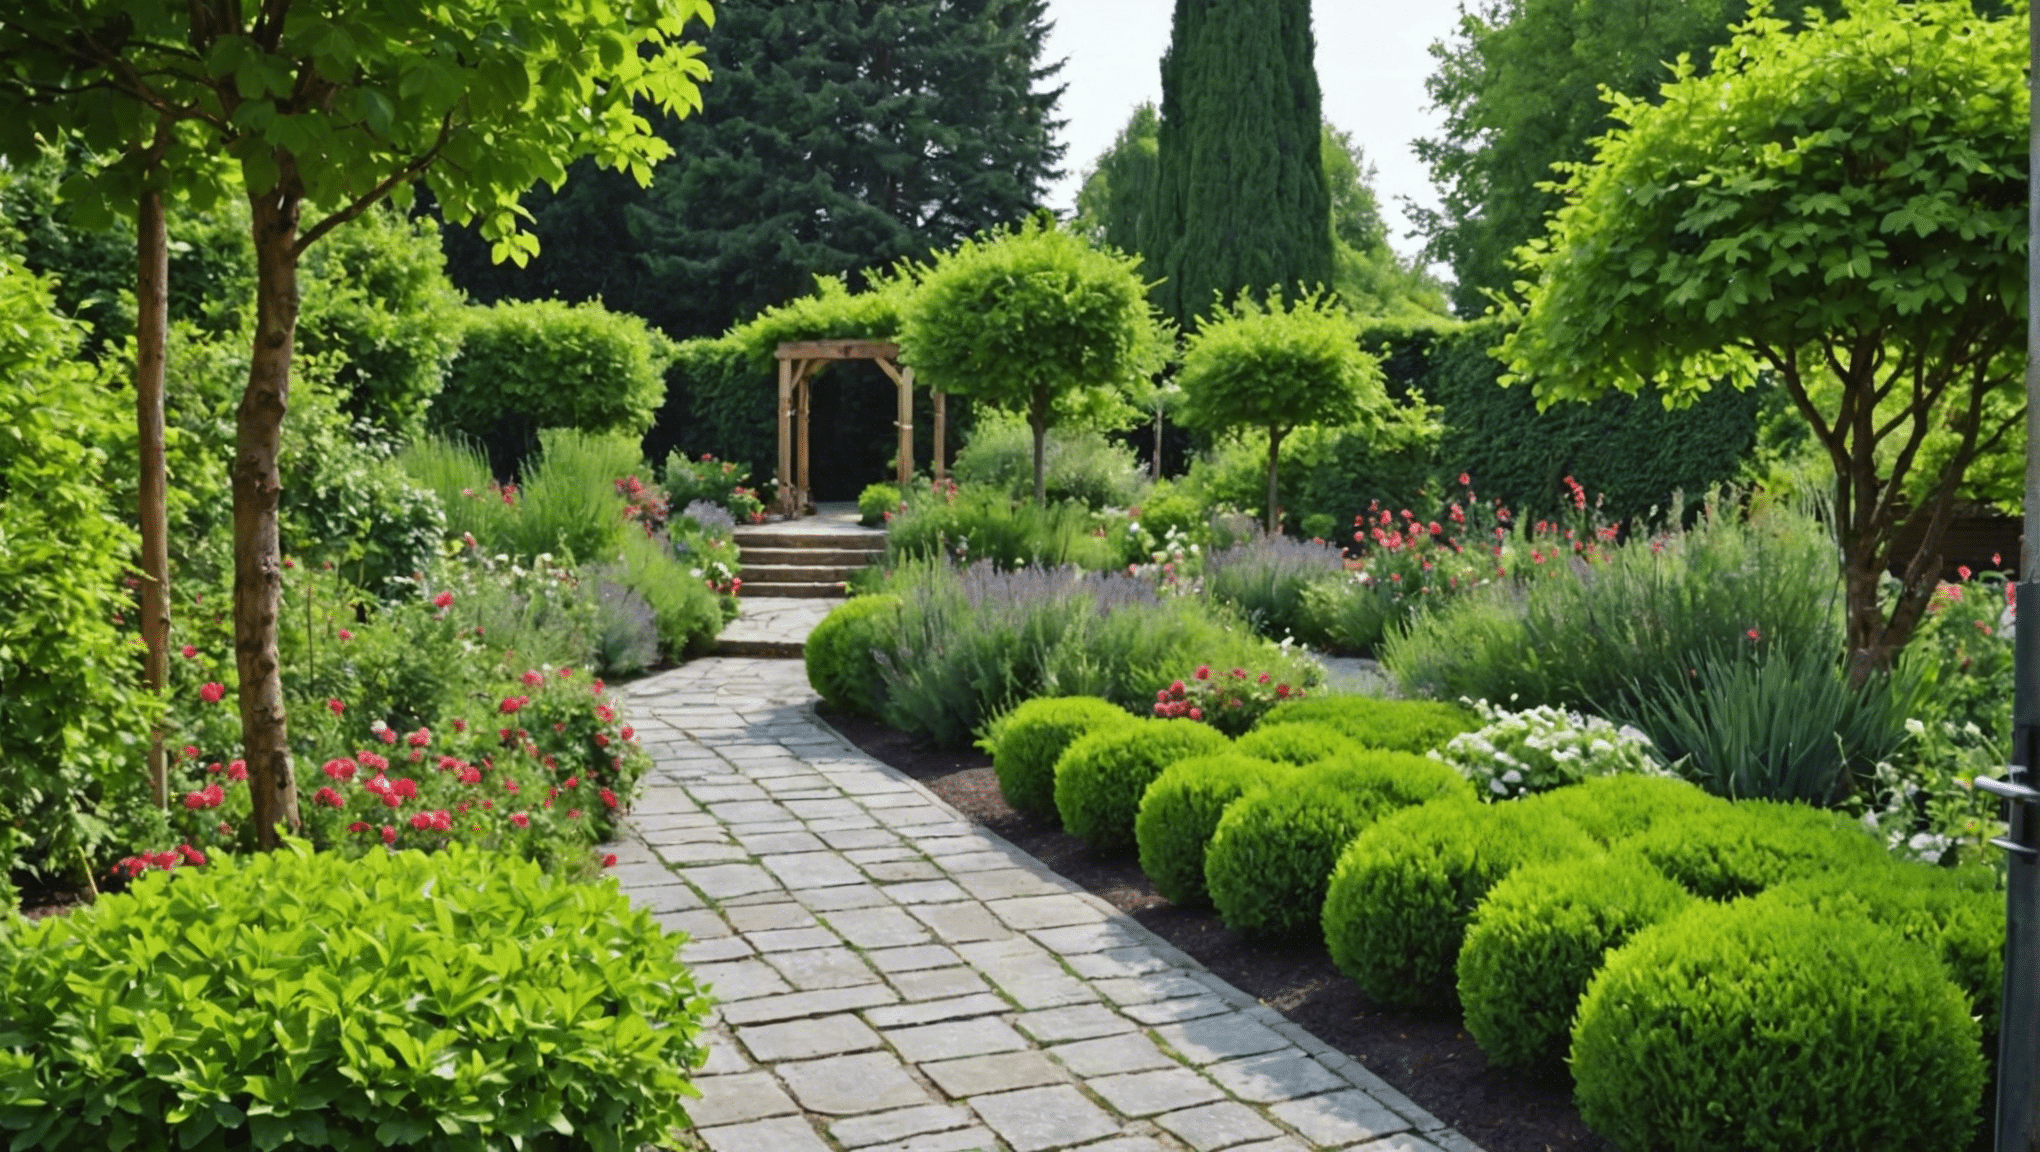 découvrez comment choisir le style de jardin qui convient le mieux à vos goûts et à votre espace avec nos conseils pratiques et inspirants.